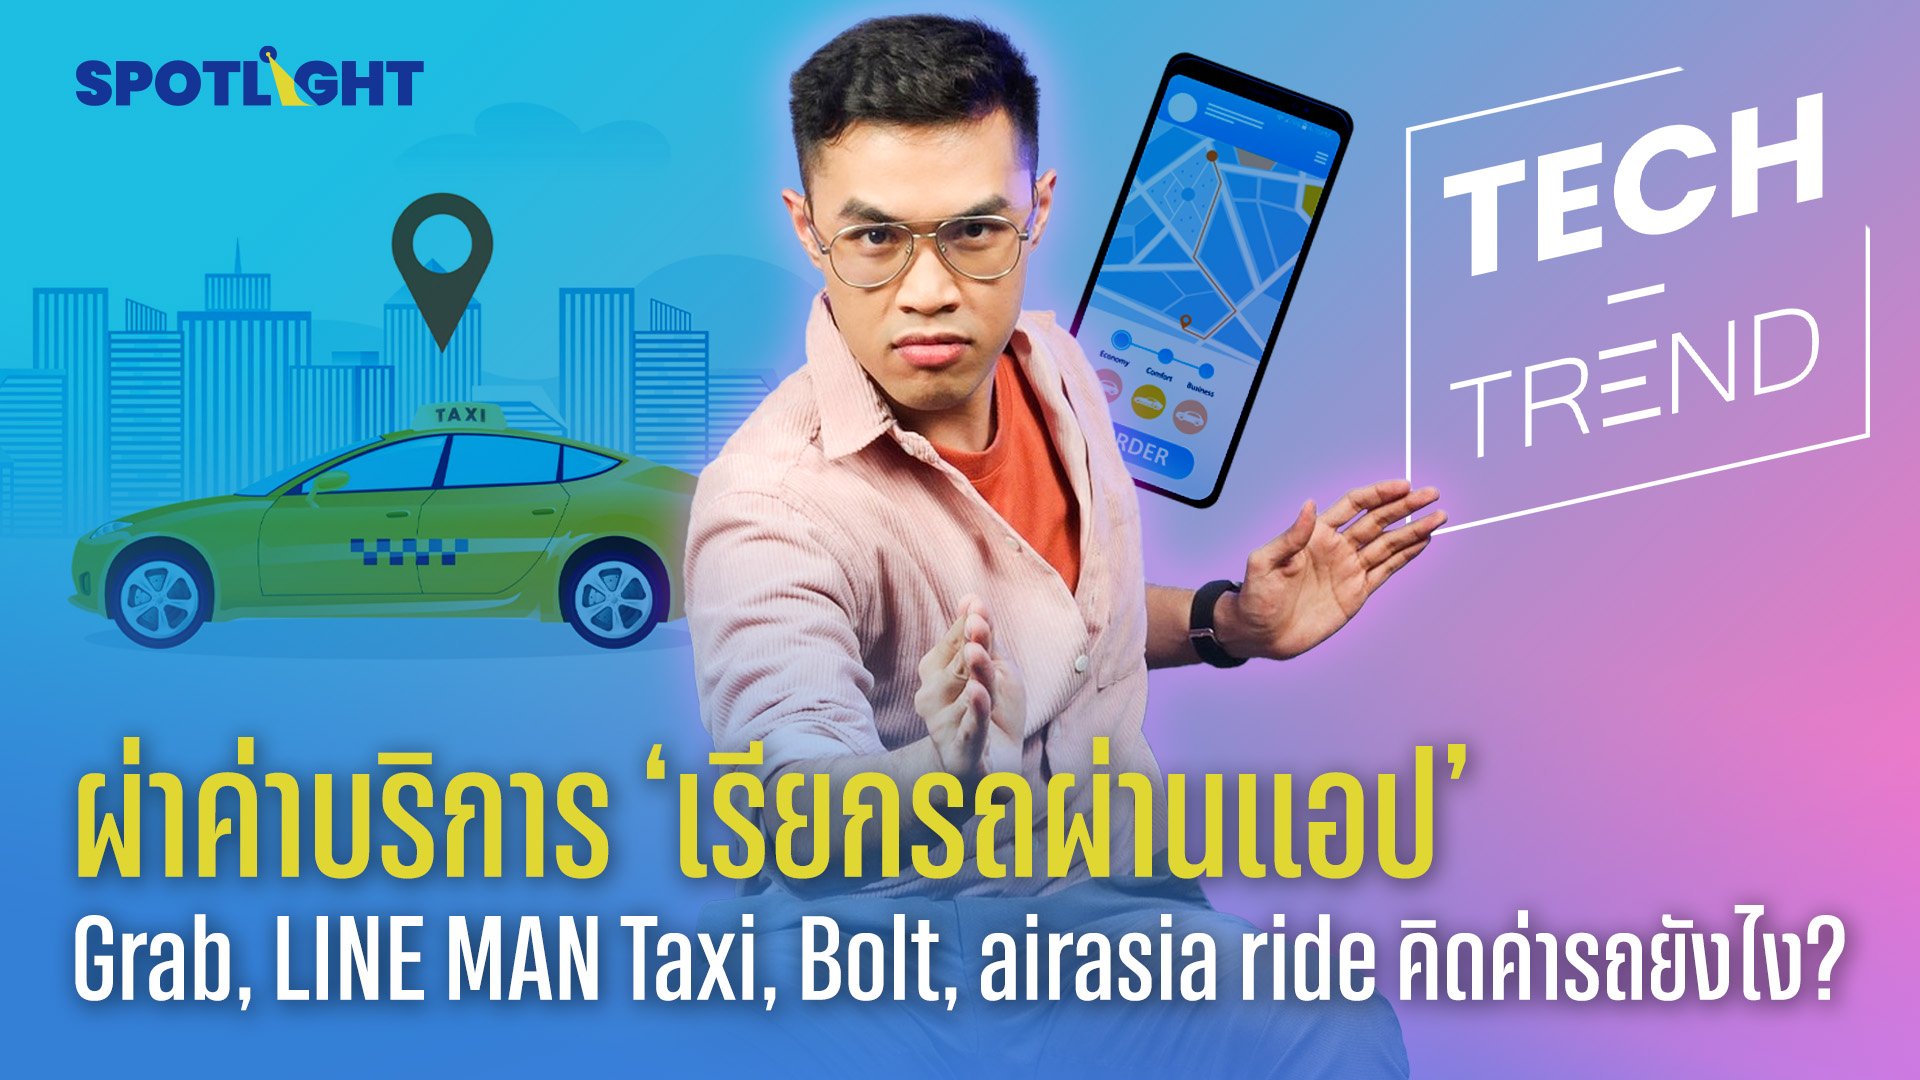 ผ่าค่าบริการ ‘เรียกรถผ่านแอป’ Grab, LINE MAN Taxi, Bolt, airasia ride คิดค่ารถยังไง? | Spotlight | 18 ส.ค. 66 | AMARIN TVHD34